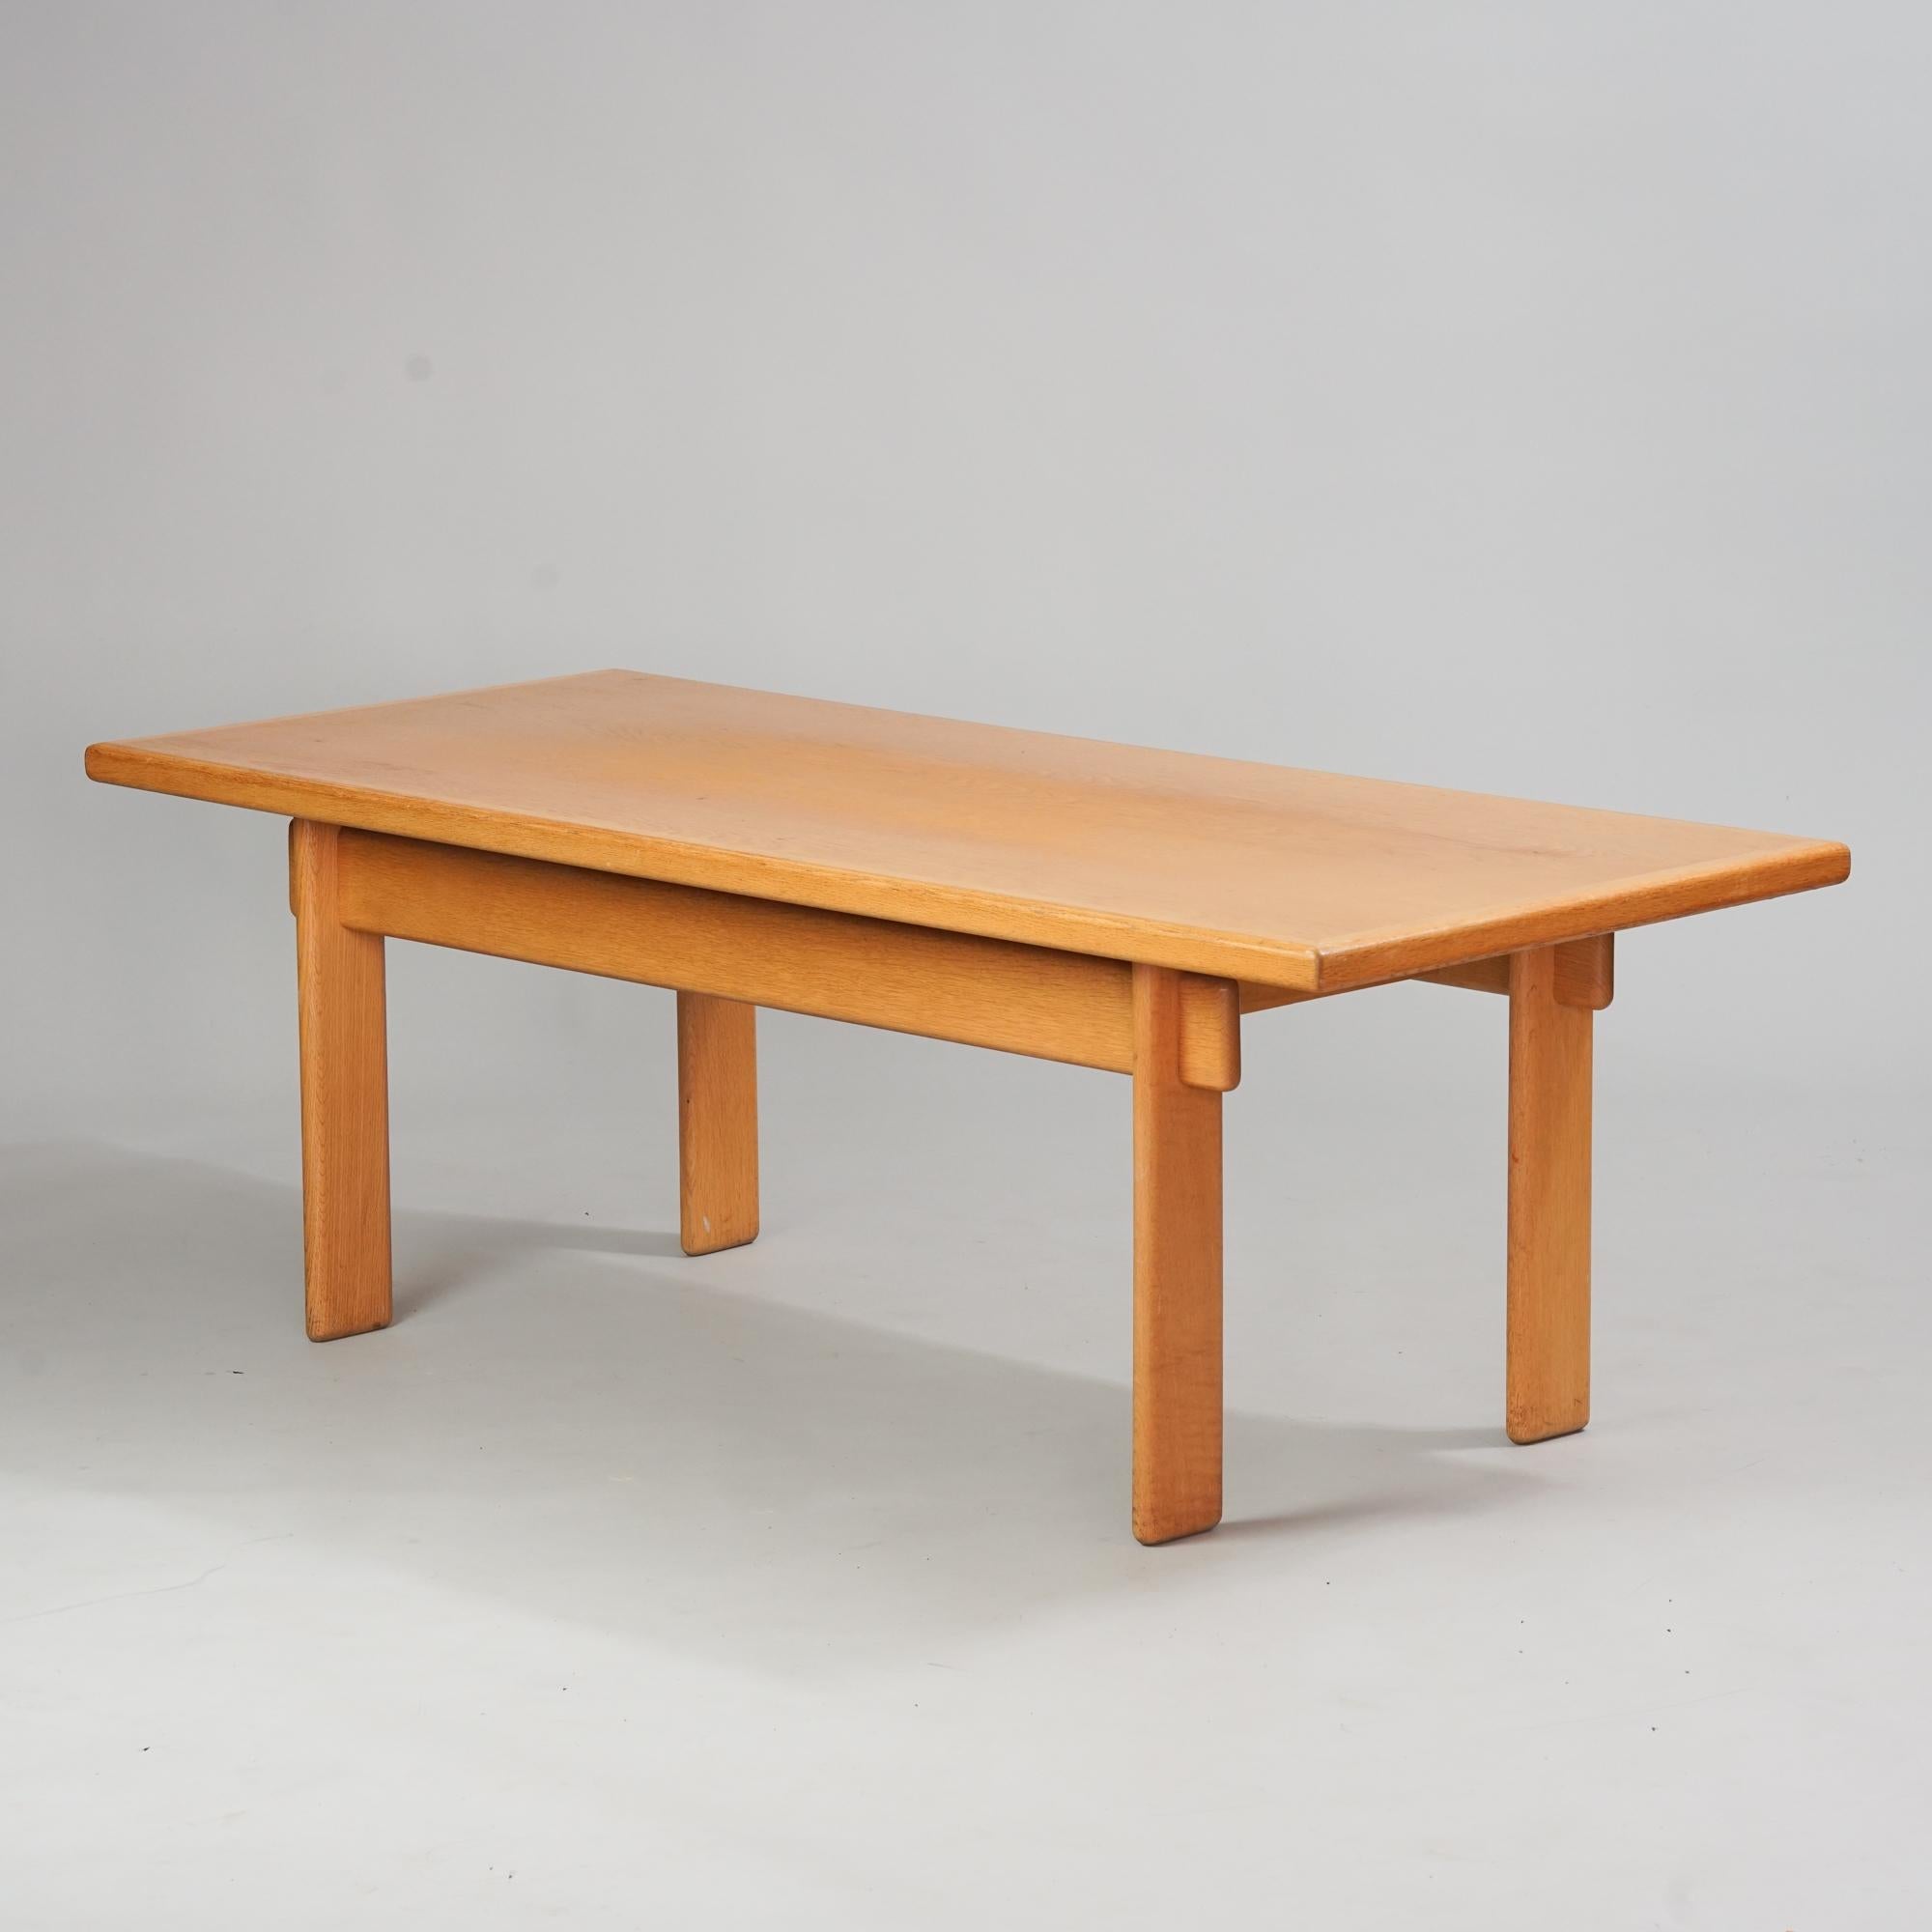 Rare table basse Bonanza, conçue par Esko Pajamies, fabriquée par Asko, milieu du 20e siècle. Chêne. Bon état vintage, patine mineure correspondant à l'âge et à l'utilisation. Refinished. 

Esko Pajamies (1931-1990) a obtenu son diplôme d'architecte